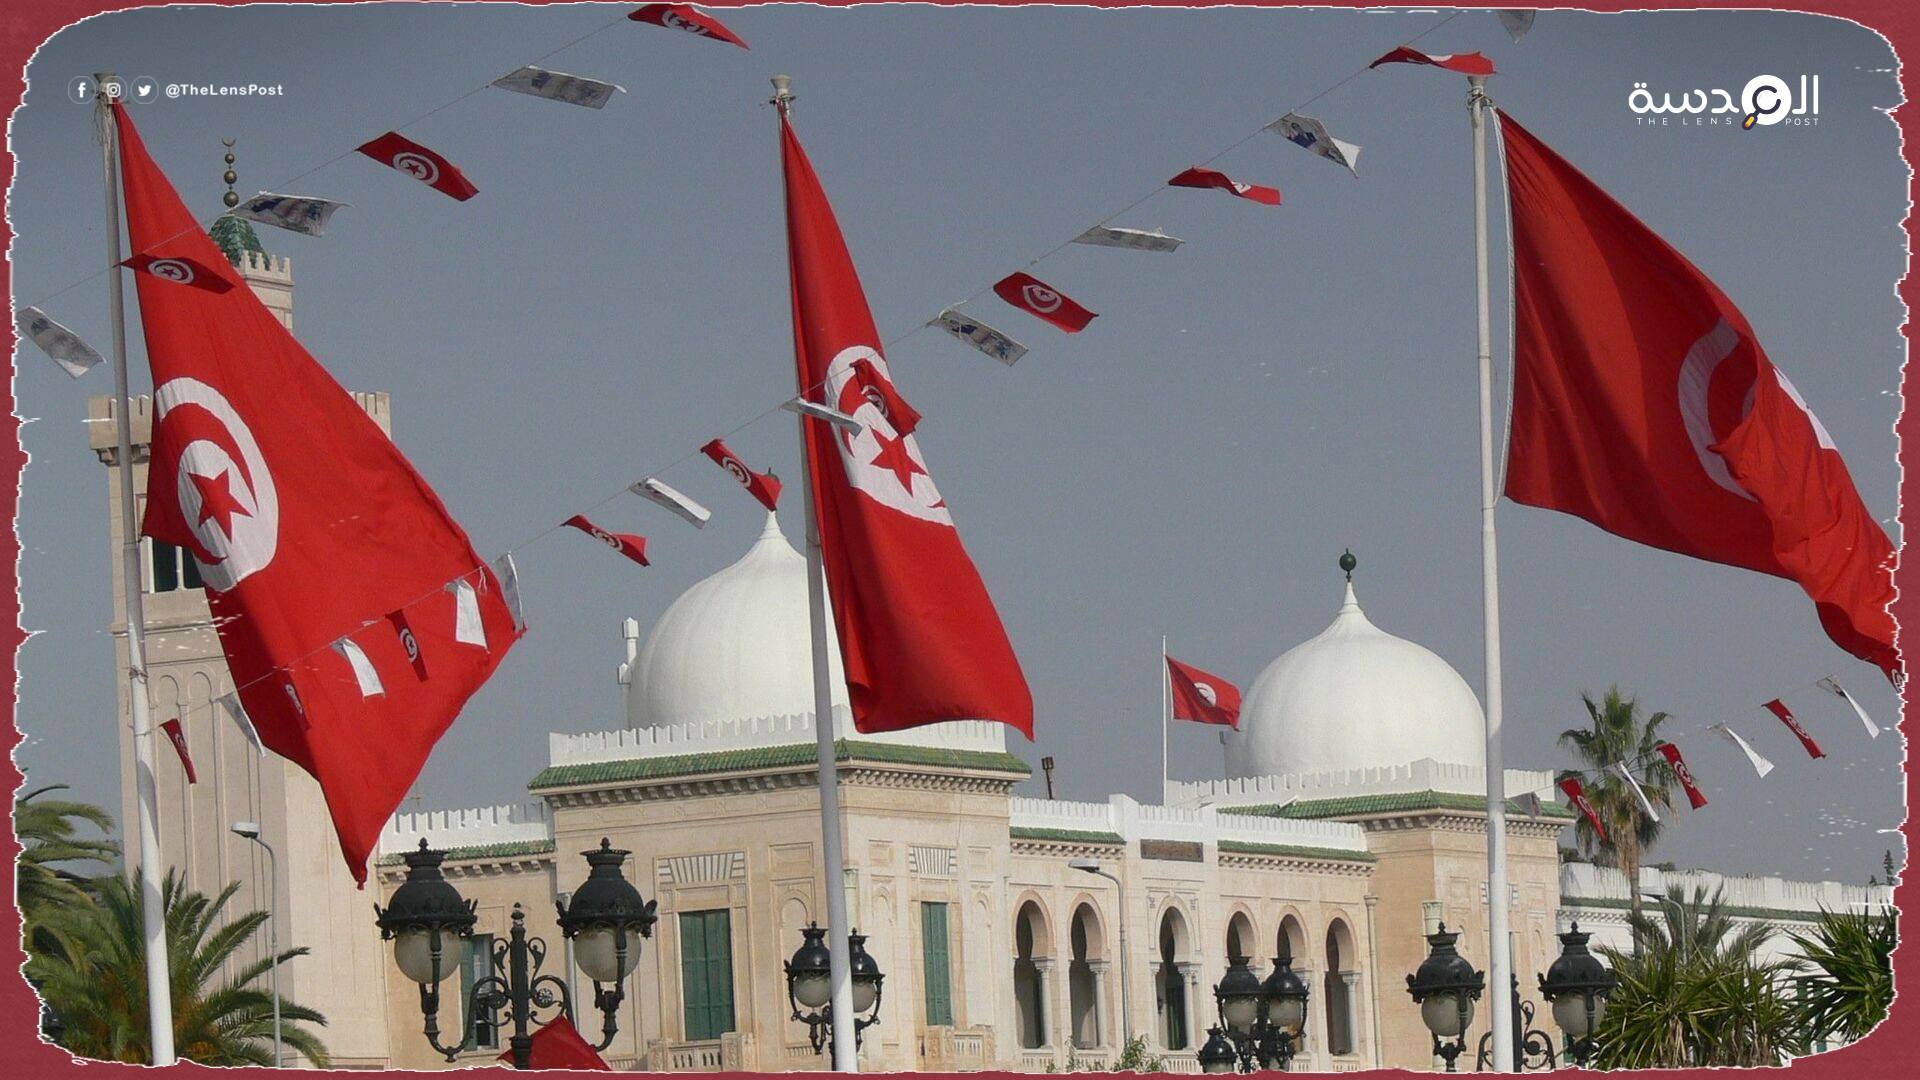  العليا للانتخابات تعلن بدء العمل بالدستور الجديد في تونس